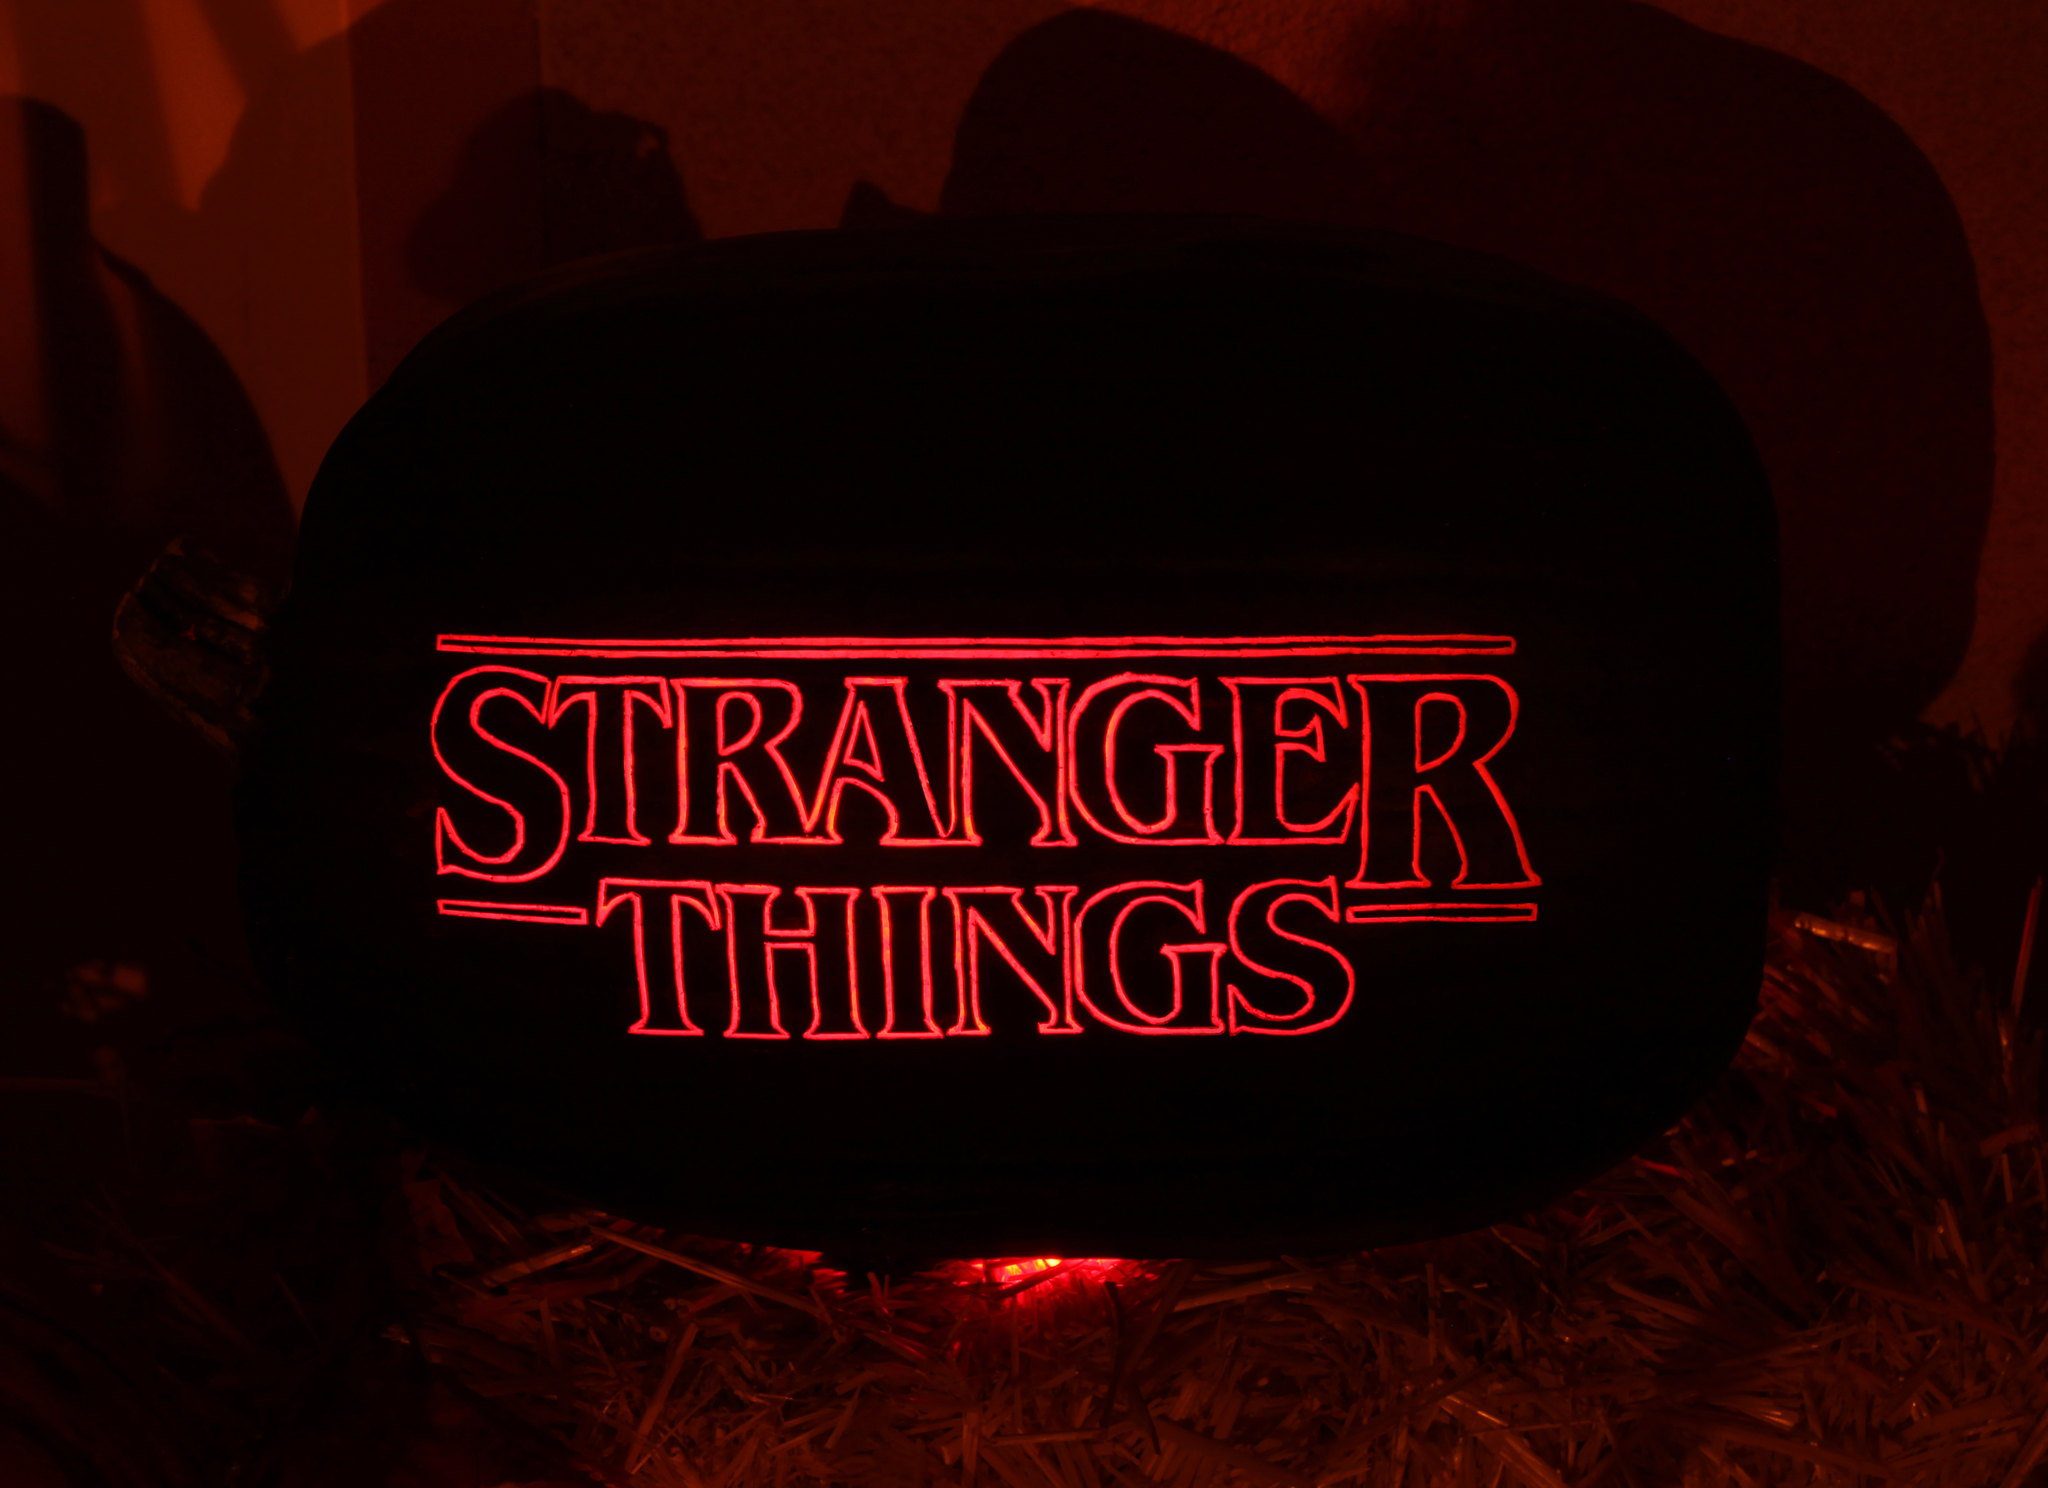 Stranger Things: Veja as coisas não tão estranhas que ajudaram a Netflix  (NFLX34) no trimestre; ações disparam em NY - Seu Dinheiro